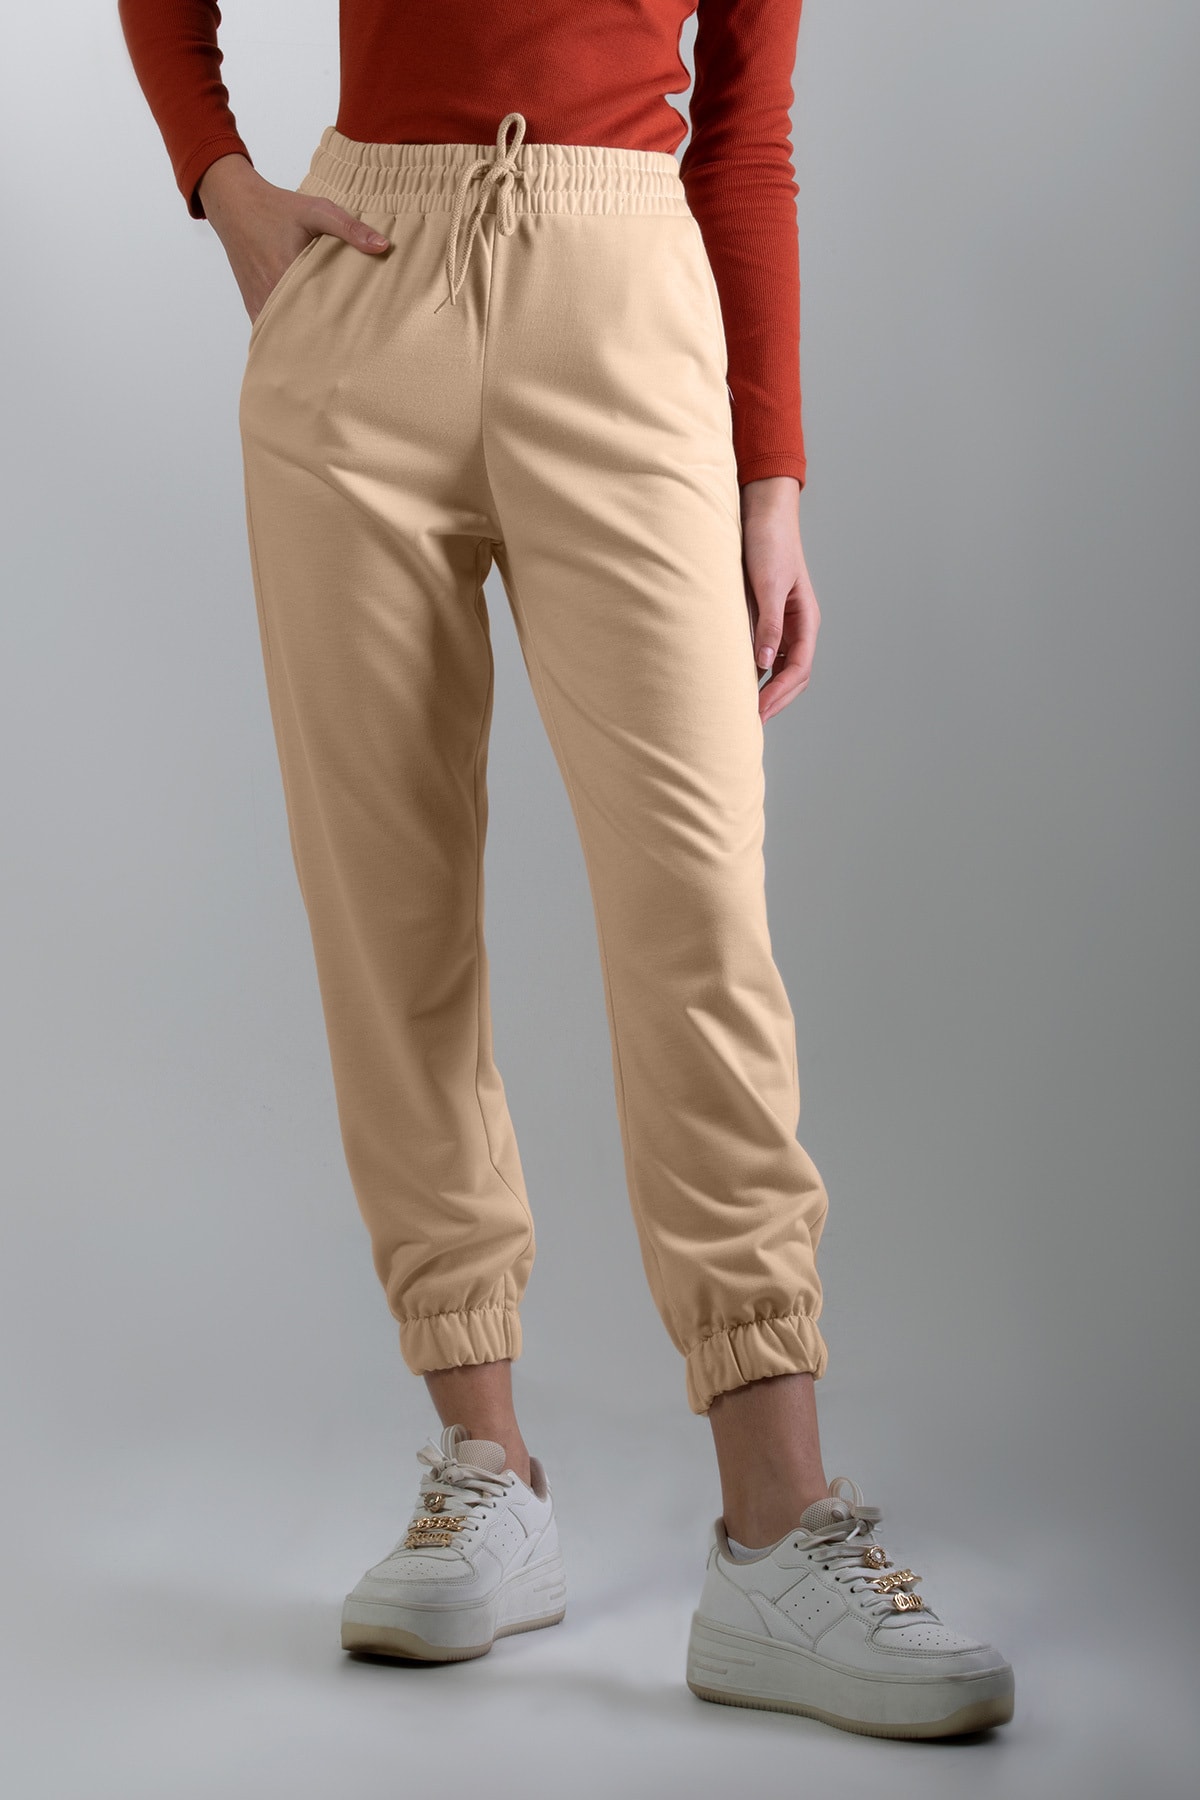 цена Женские базовые трикотажные спортивные штаны P21w110-66355 Pattaya, бежевый